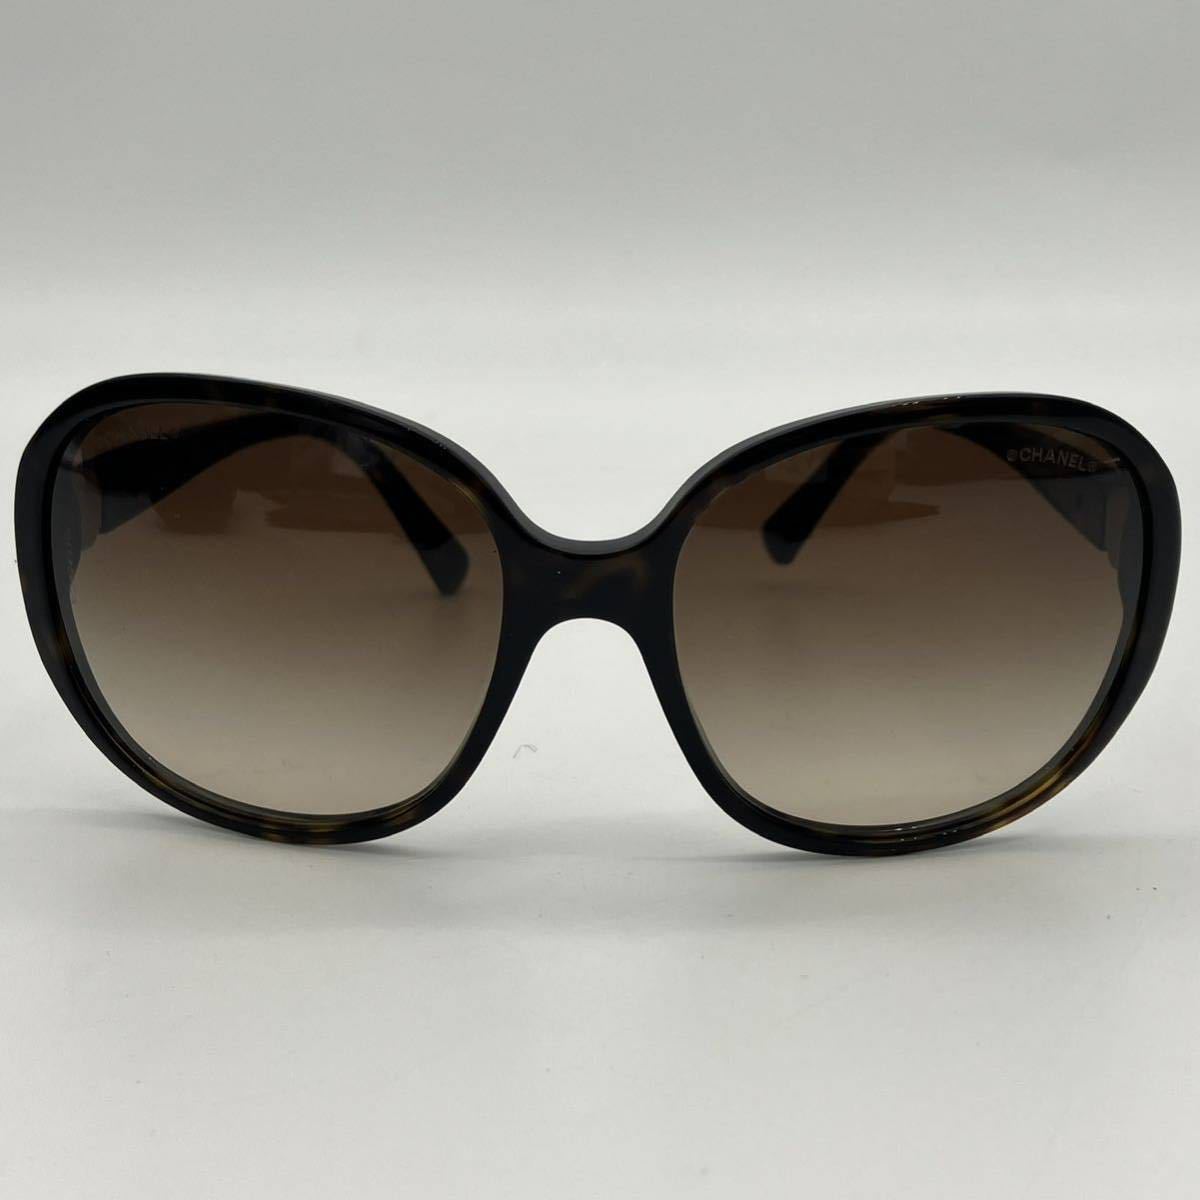 【極美品】CHANEL シャネル サングラス ブラウン グラデーション ココマーク CC バタフライ オーバー アイウェア メガネ 眼鏡 レディース